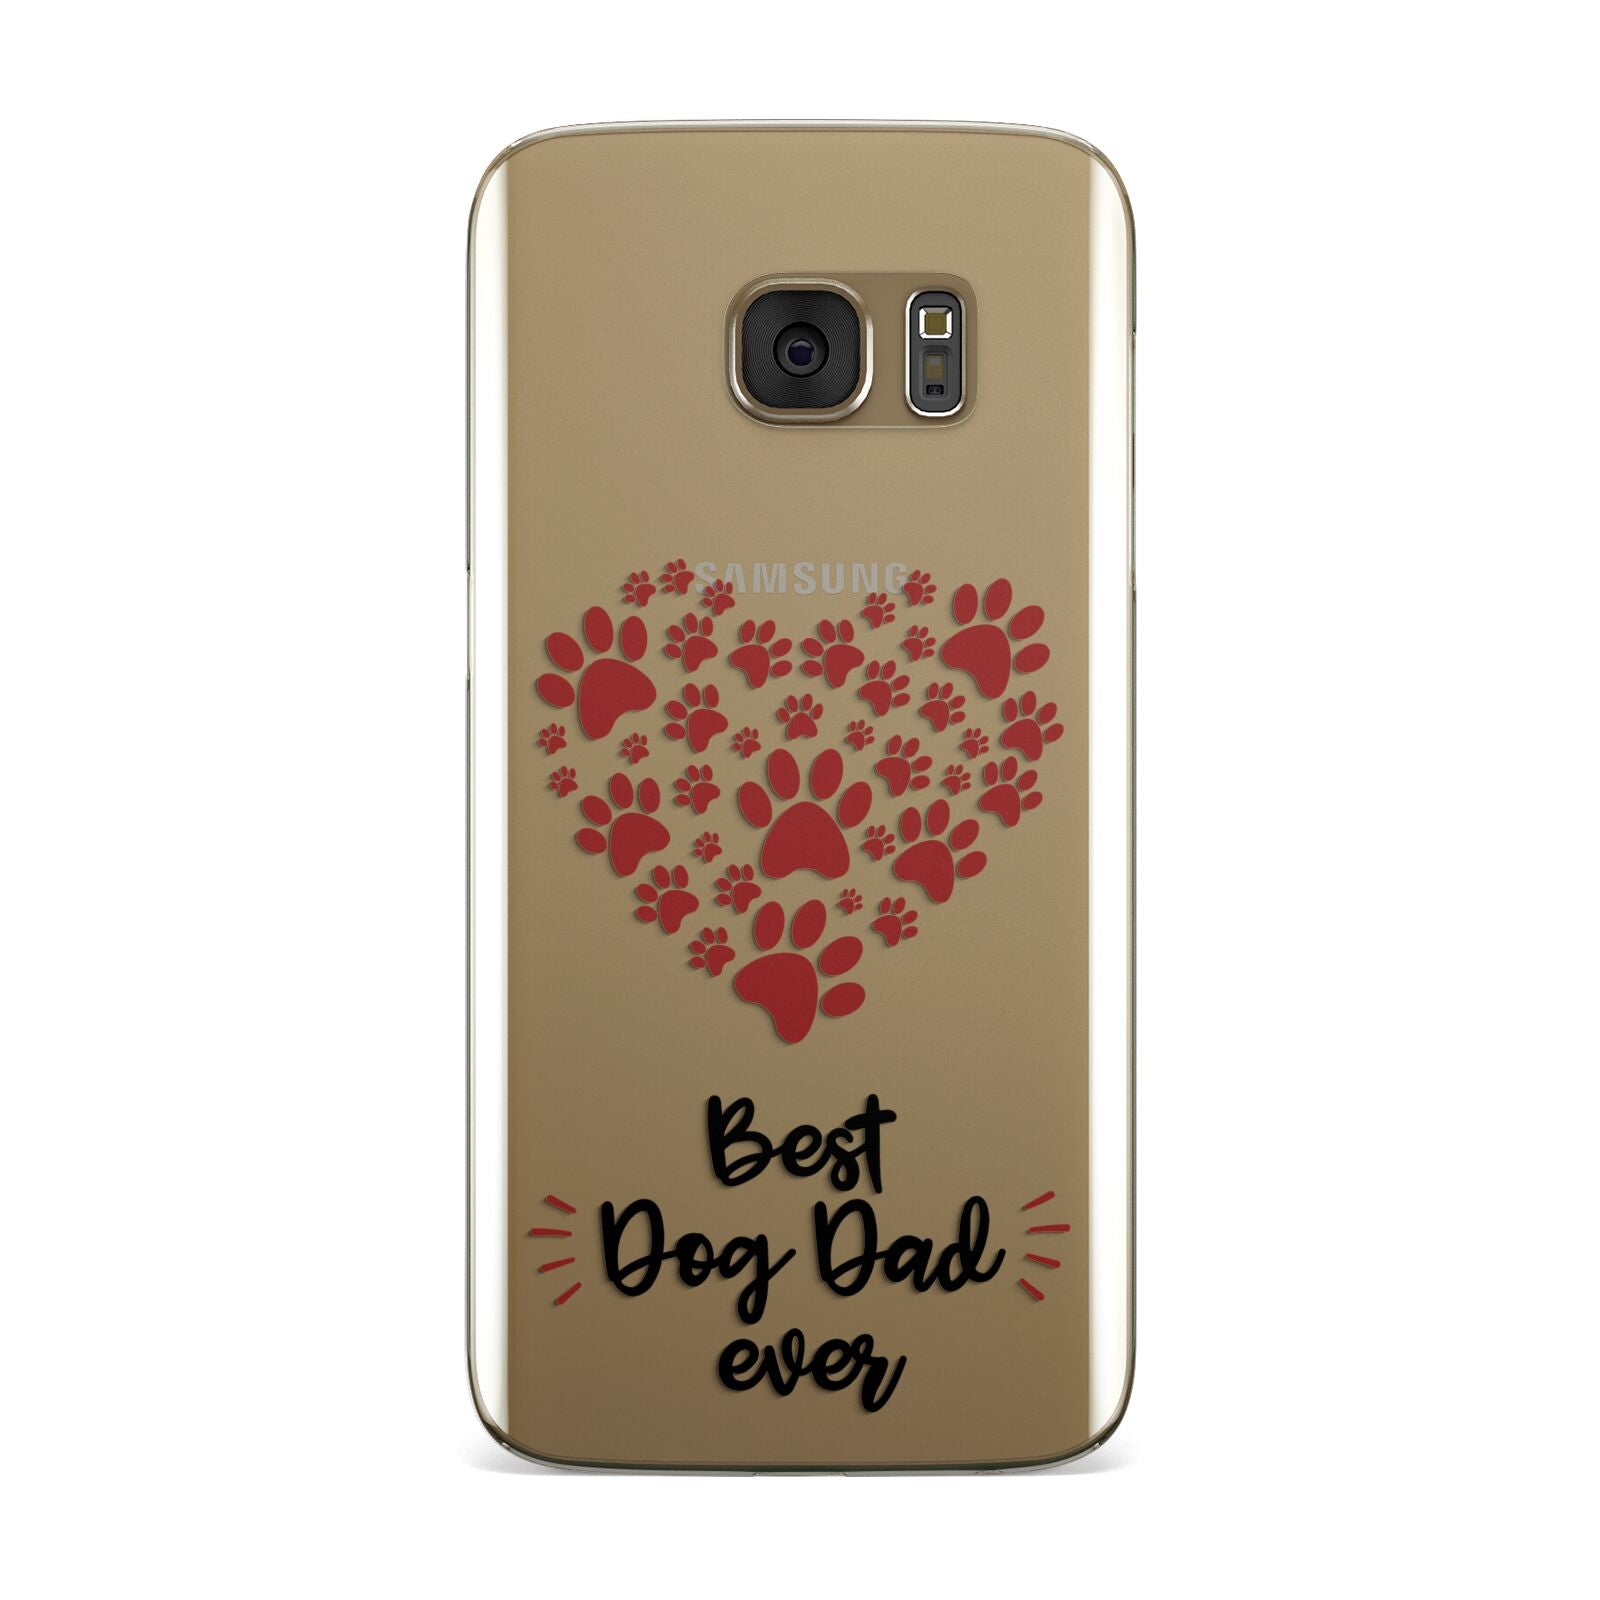 Best Dog Dad Paws Samsung Galaxy Case